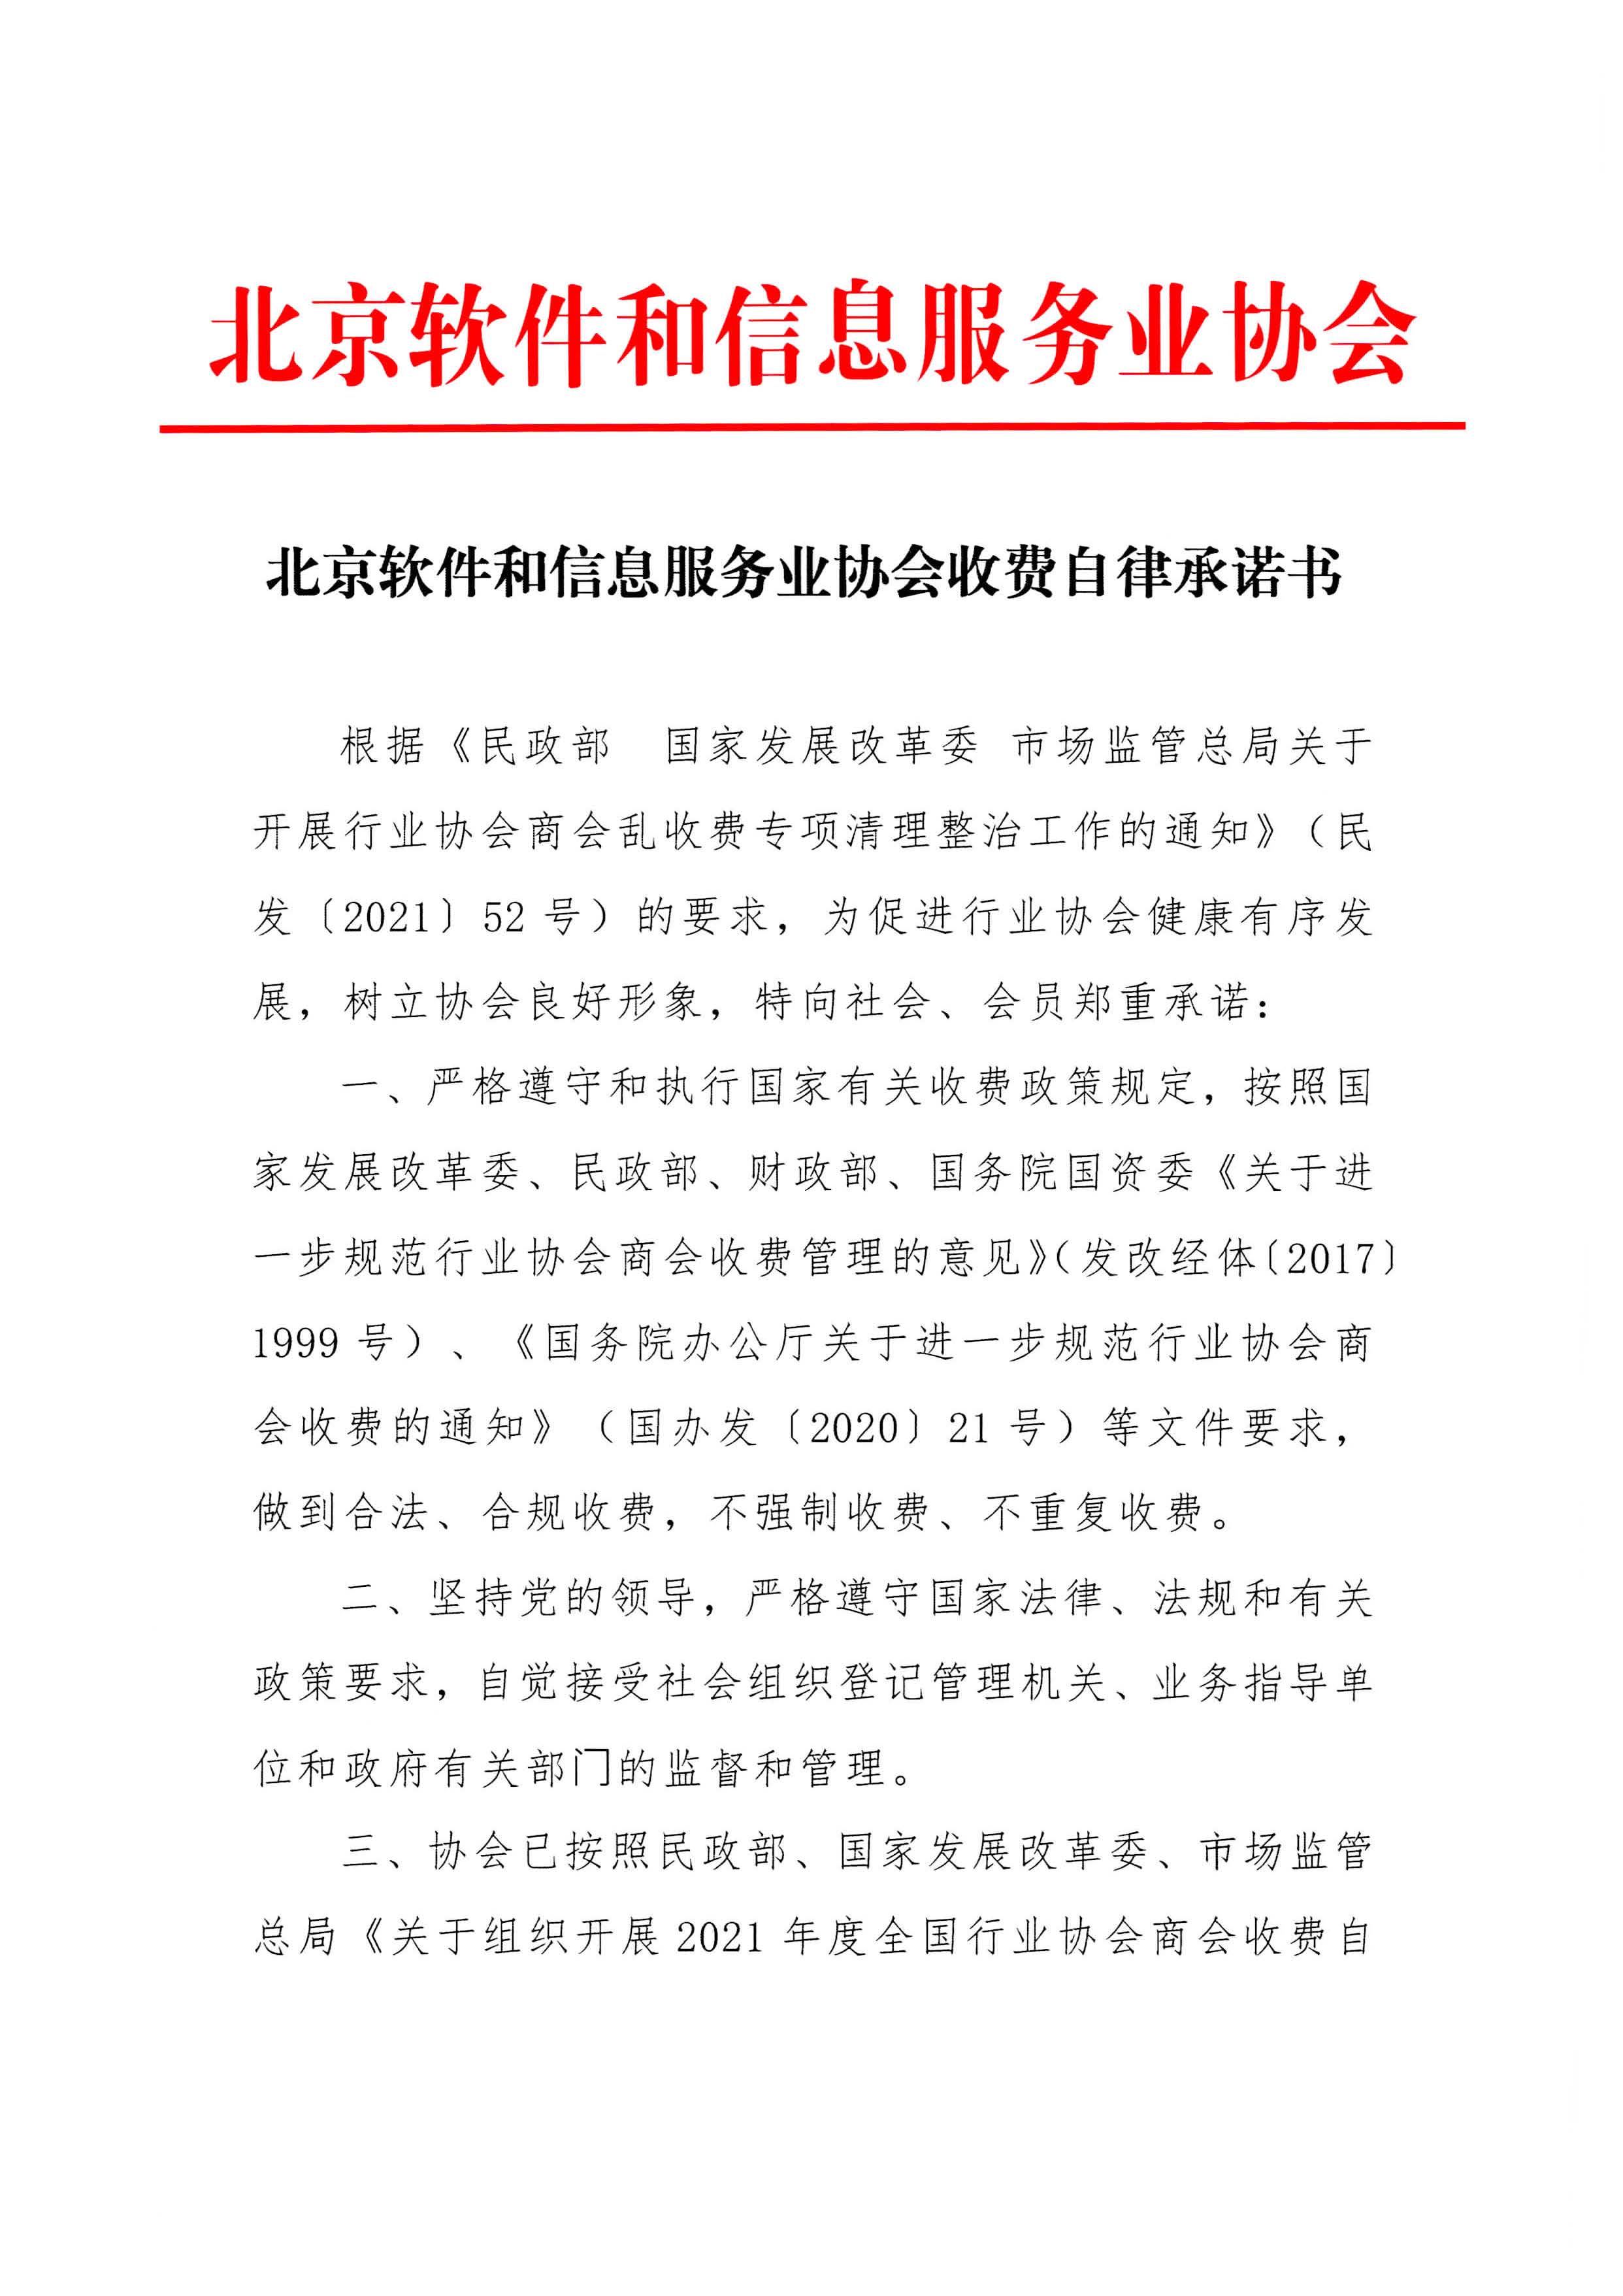 北京软件和信息服务业协会收费自律承诺书_页面_1.jpg